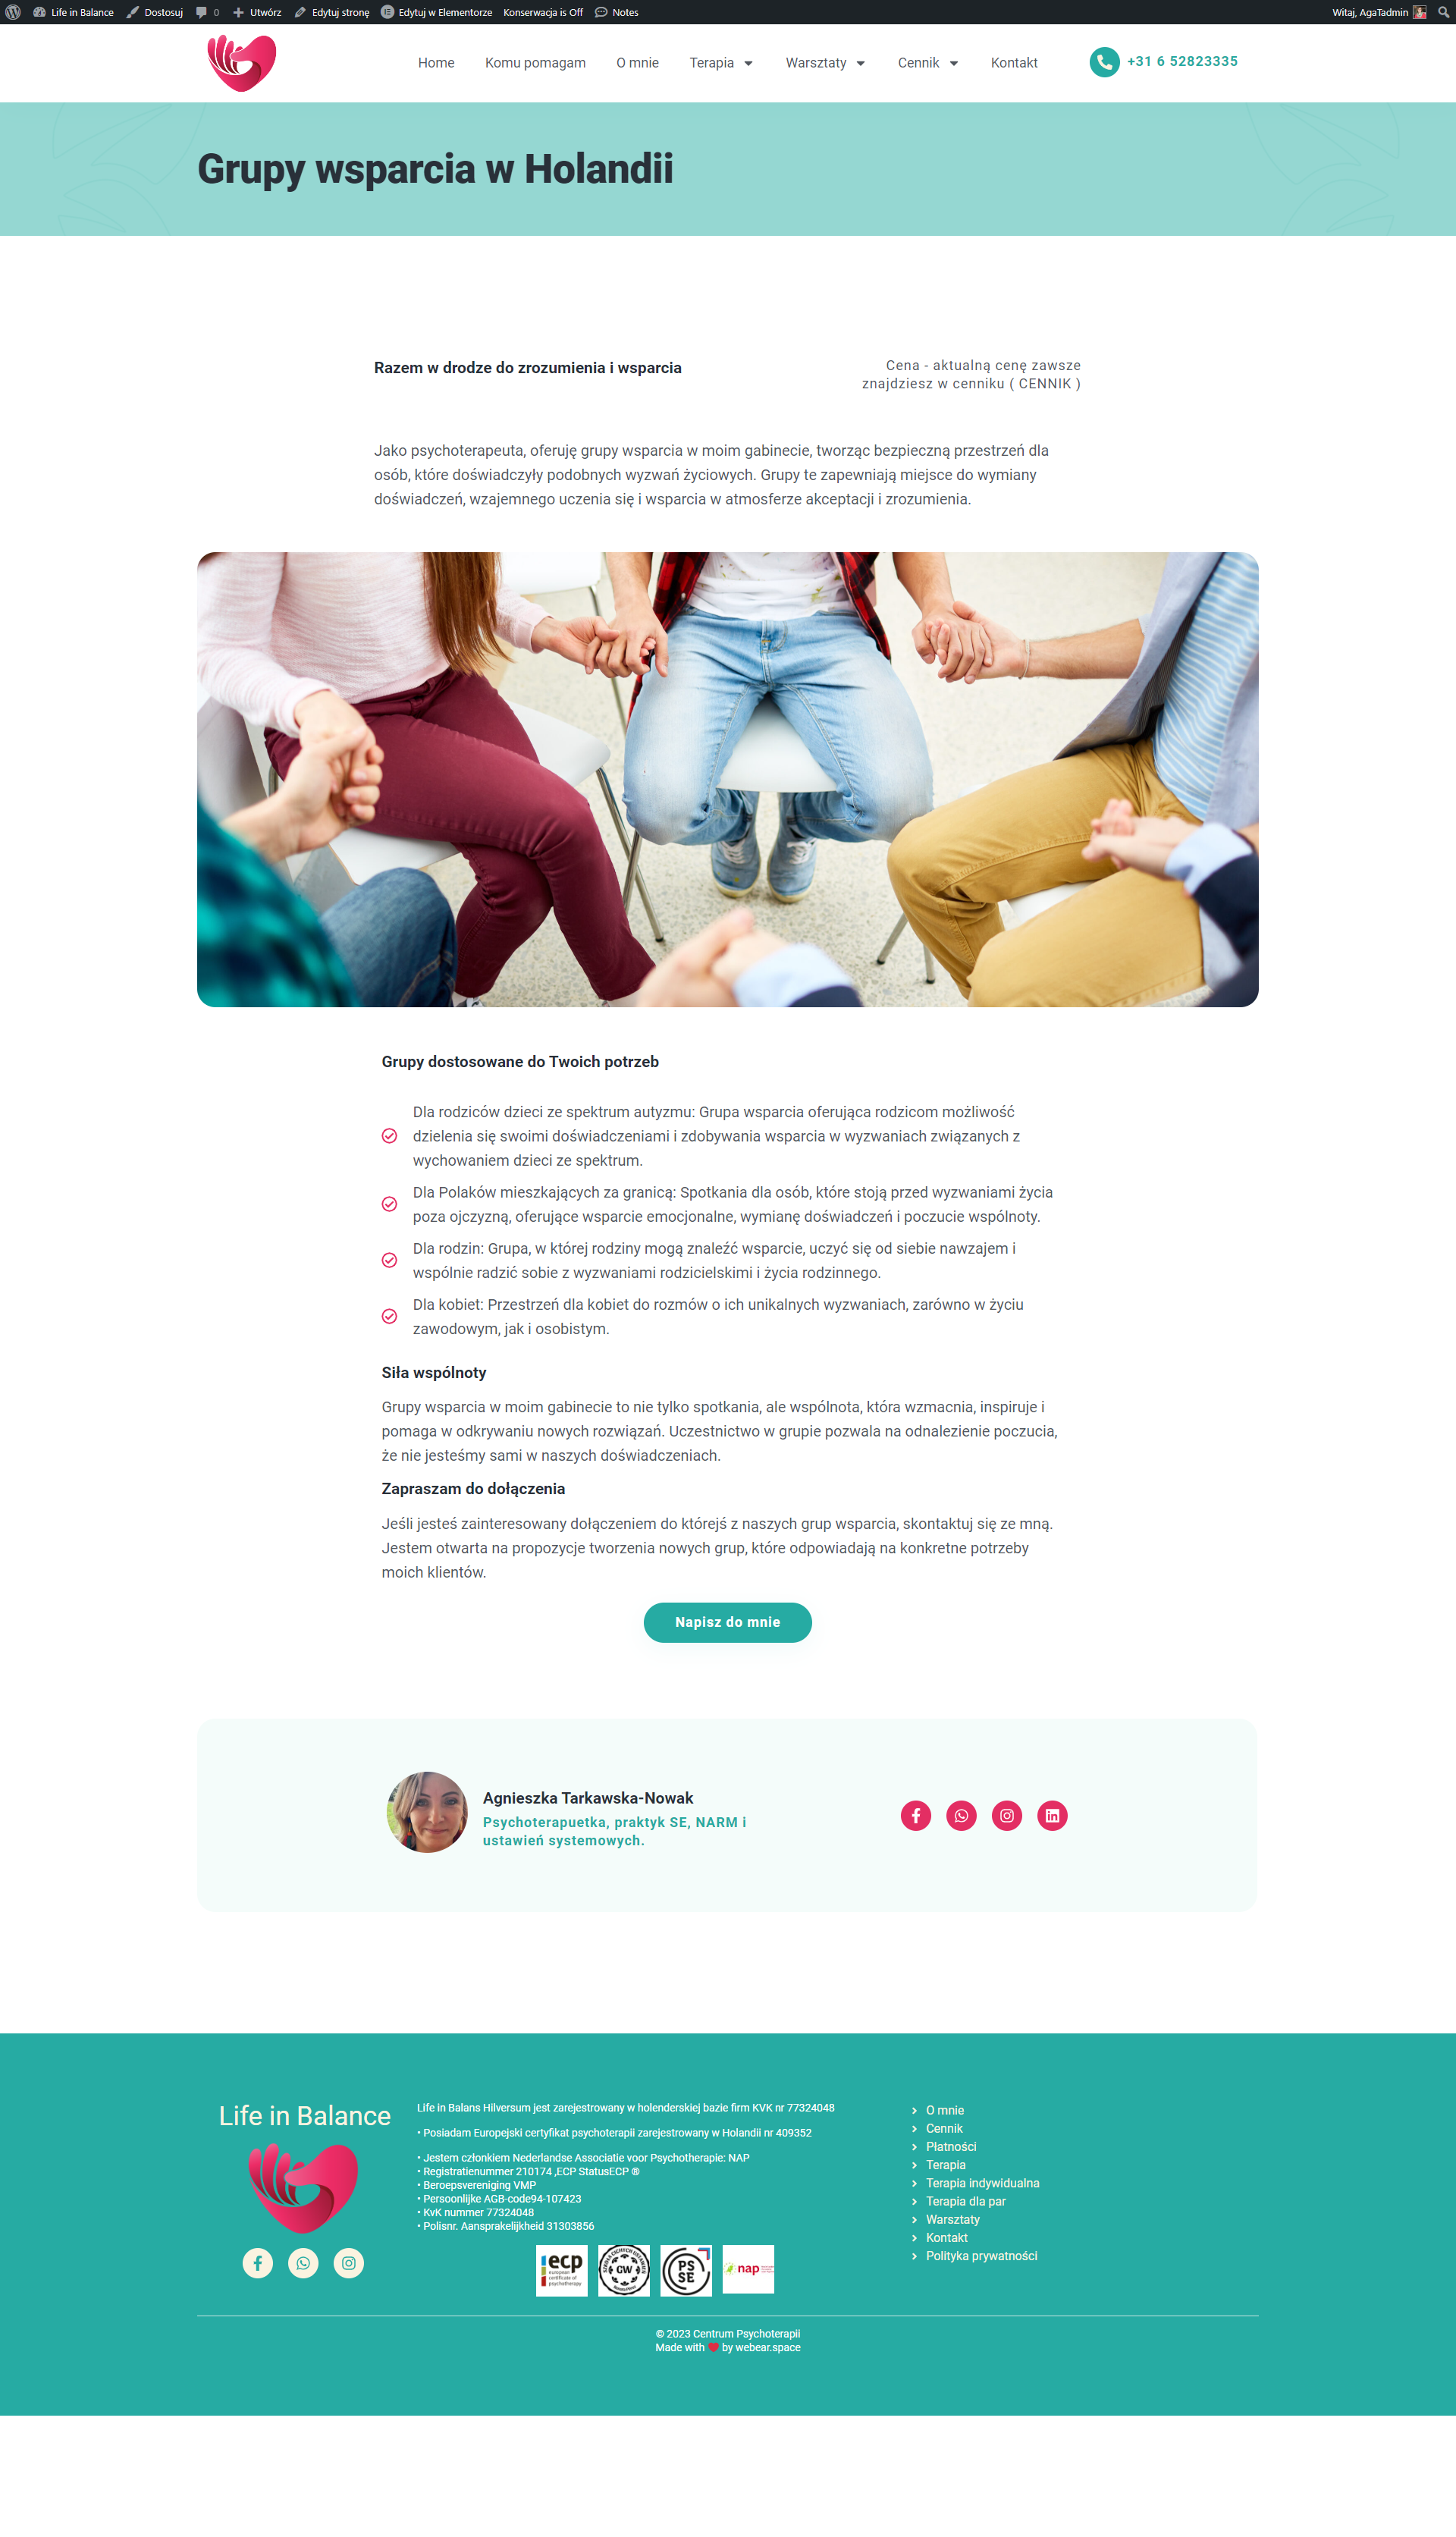 centrumpsychoterapii-grupa-wsparcia-holandia modernizjaca strony internetowej